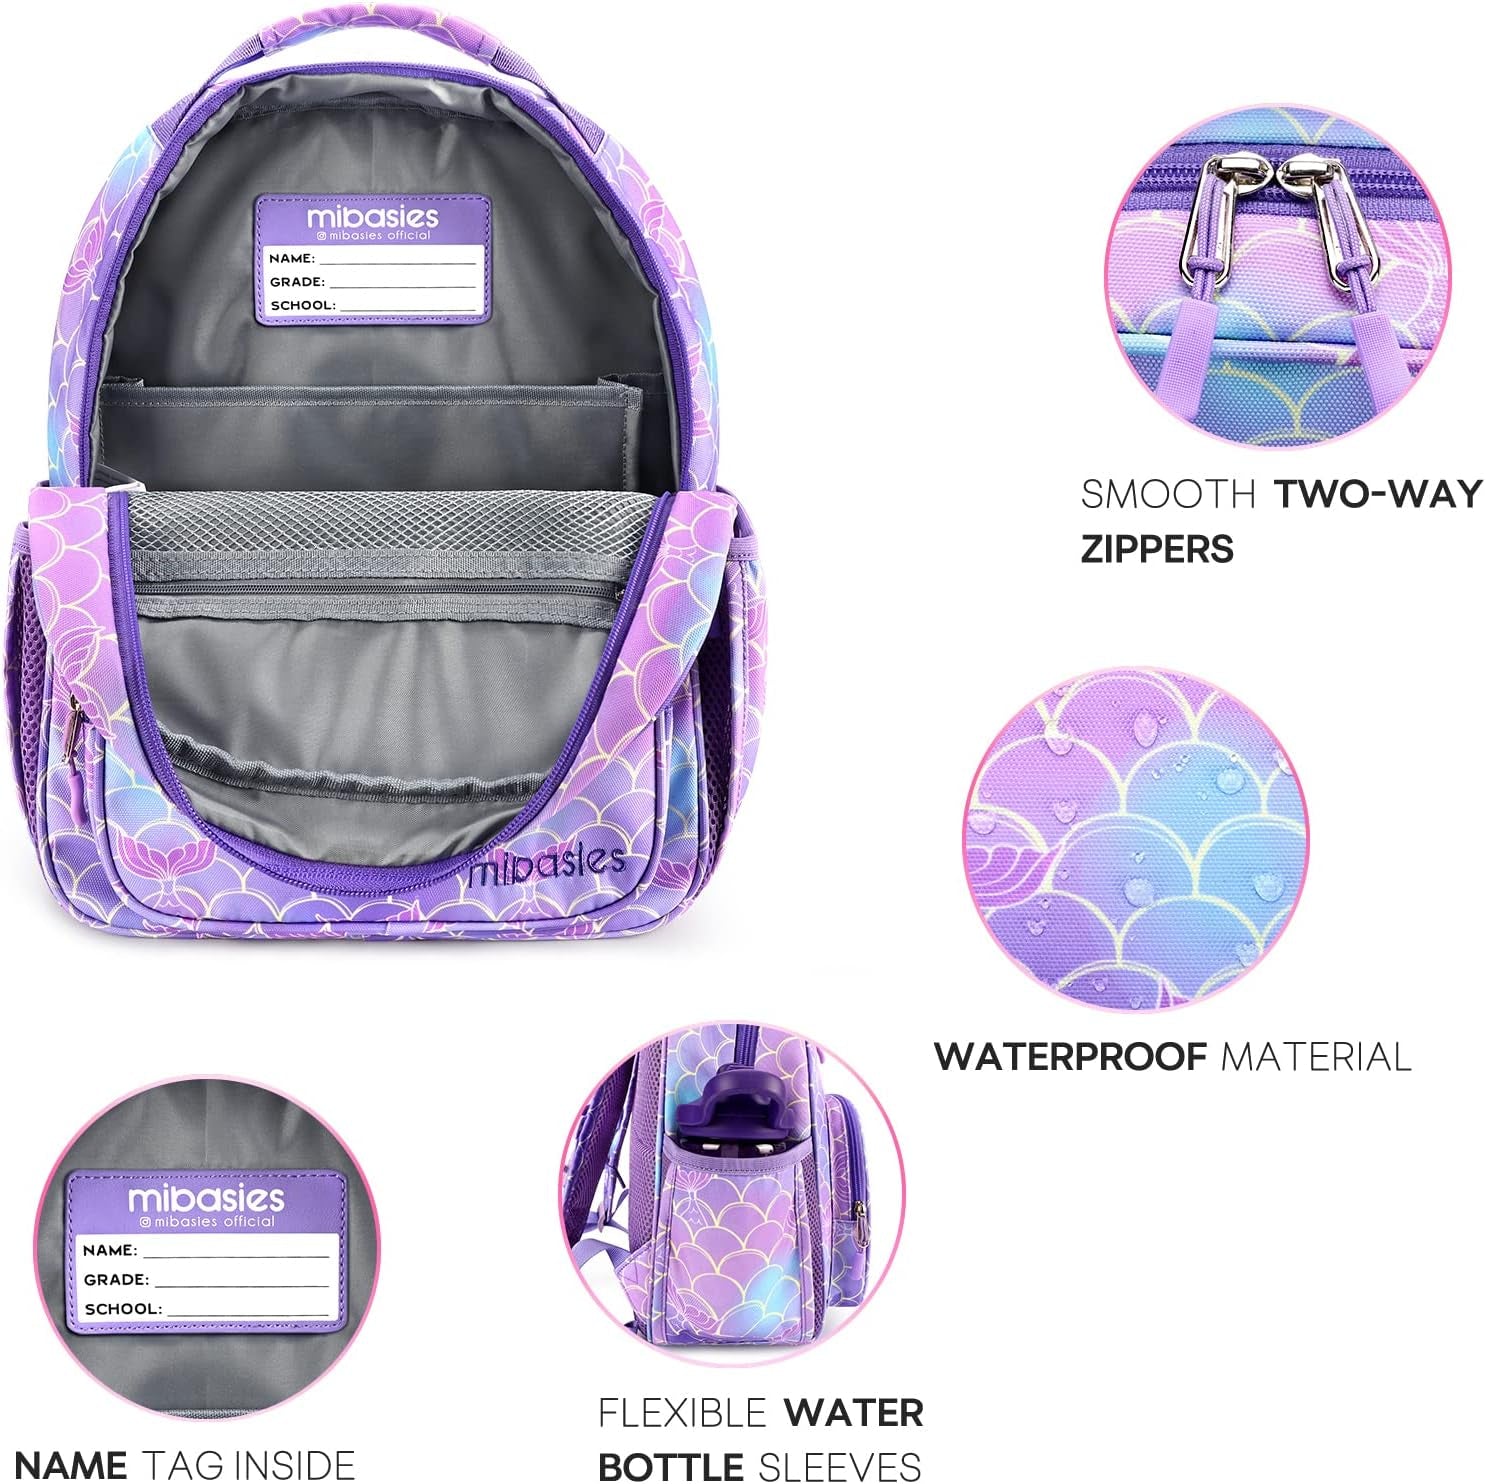 Toddler Backpack for Girls and Boys 2-4, Preschool Kindergarten Backpack, Cute Kids Backpacks for Girls（Flower Unicorn）